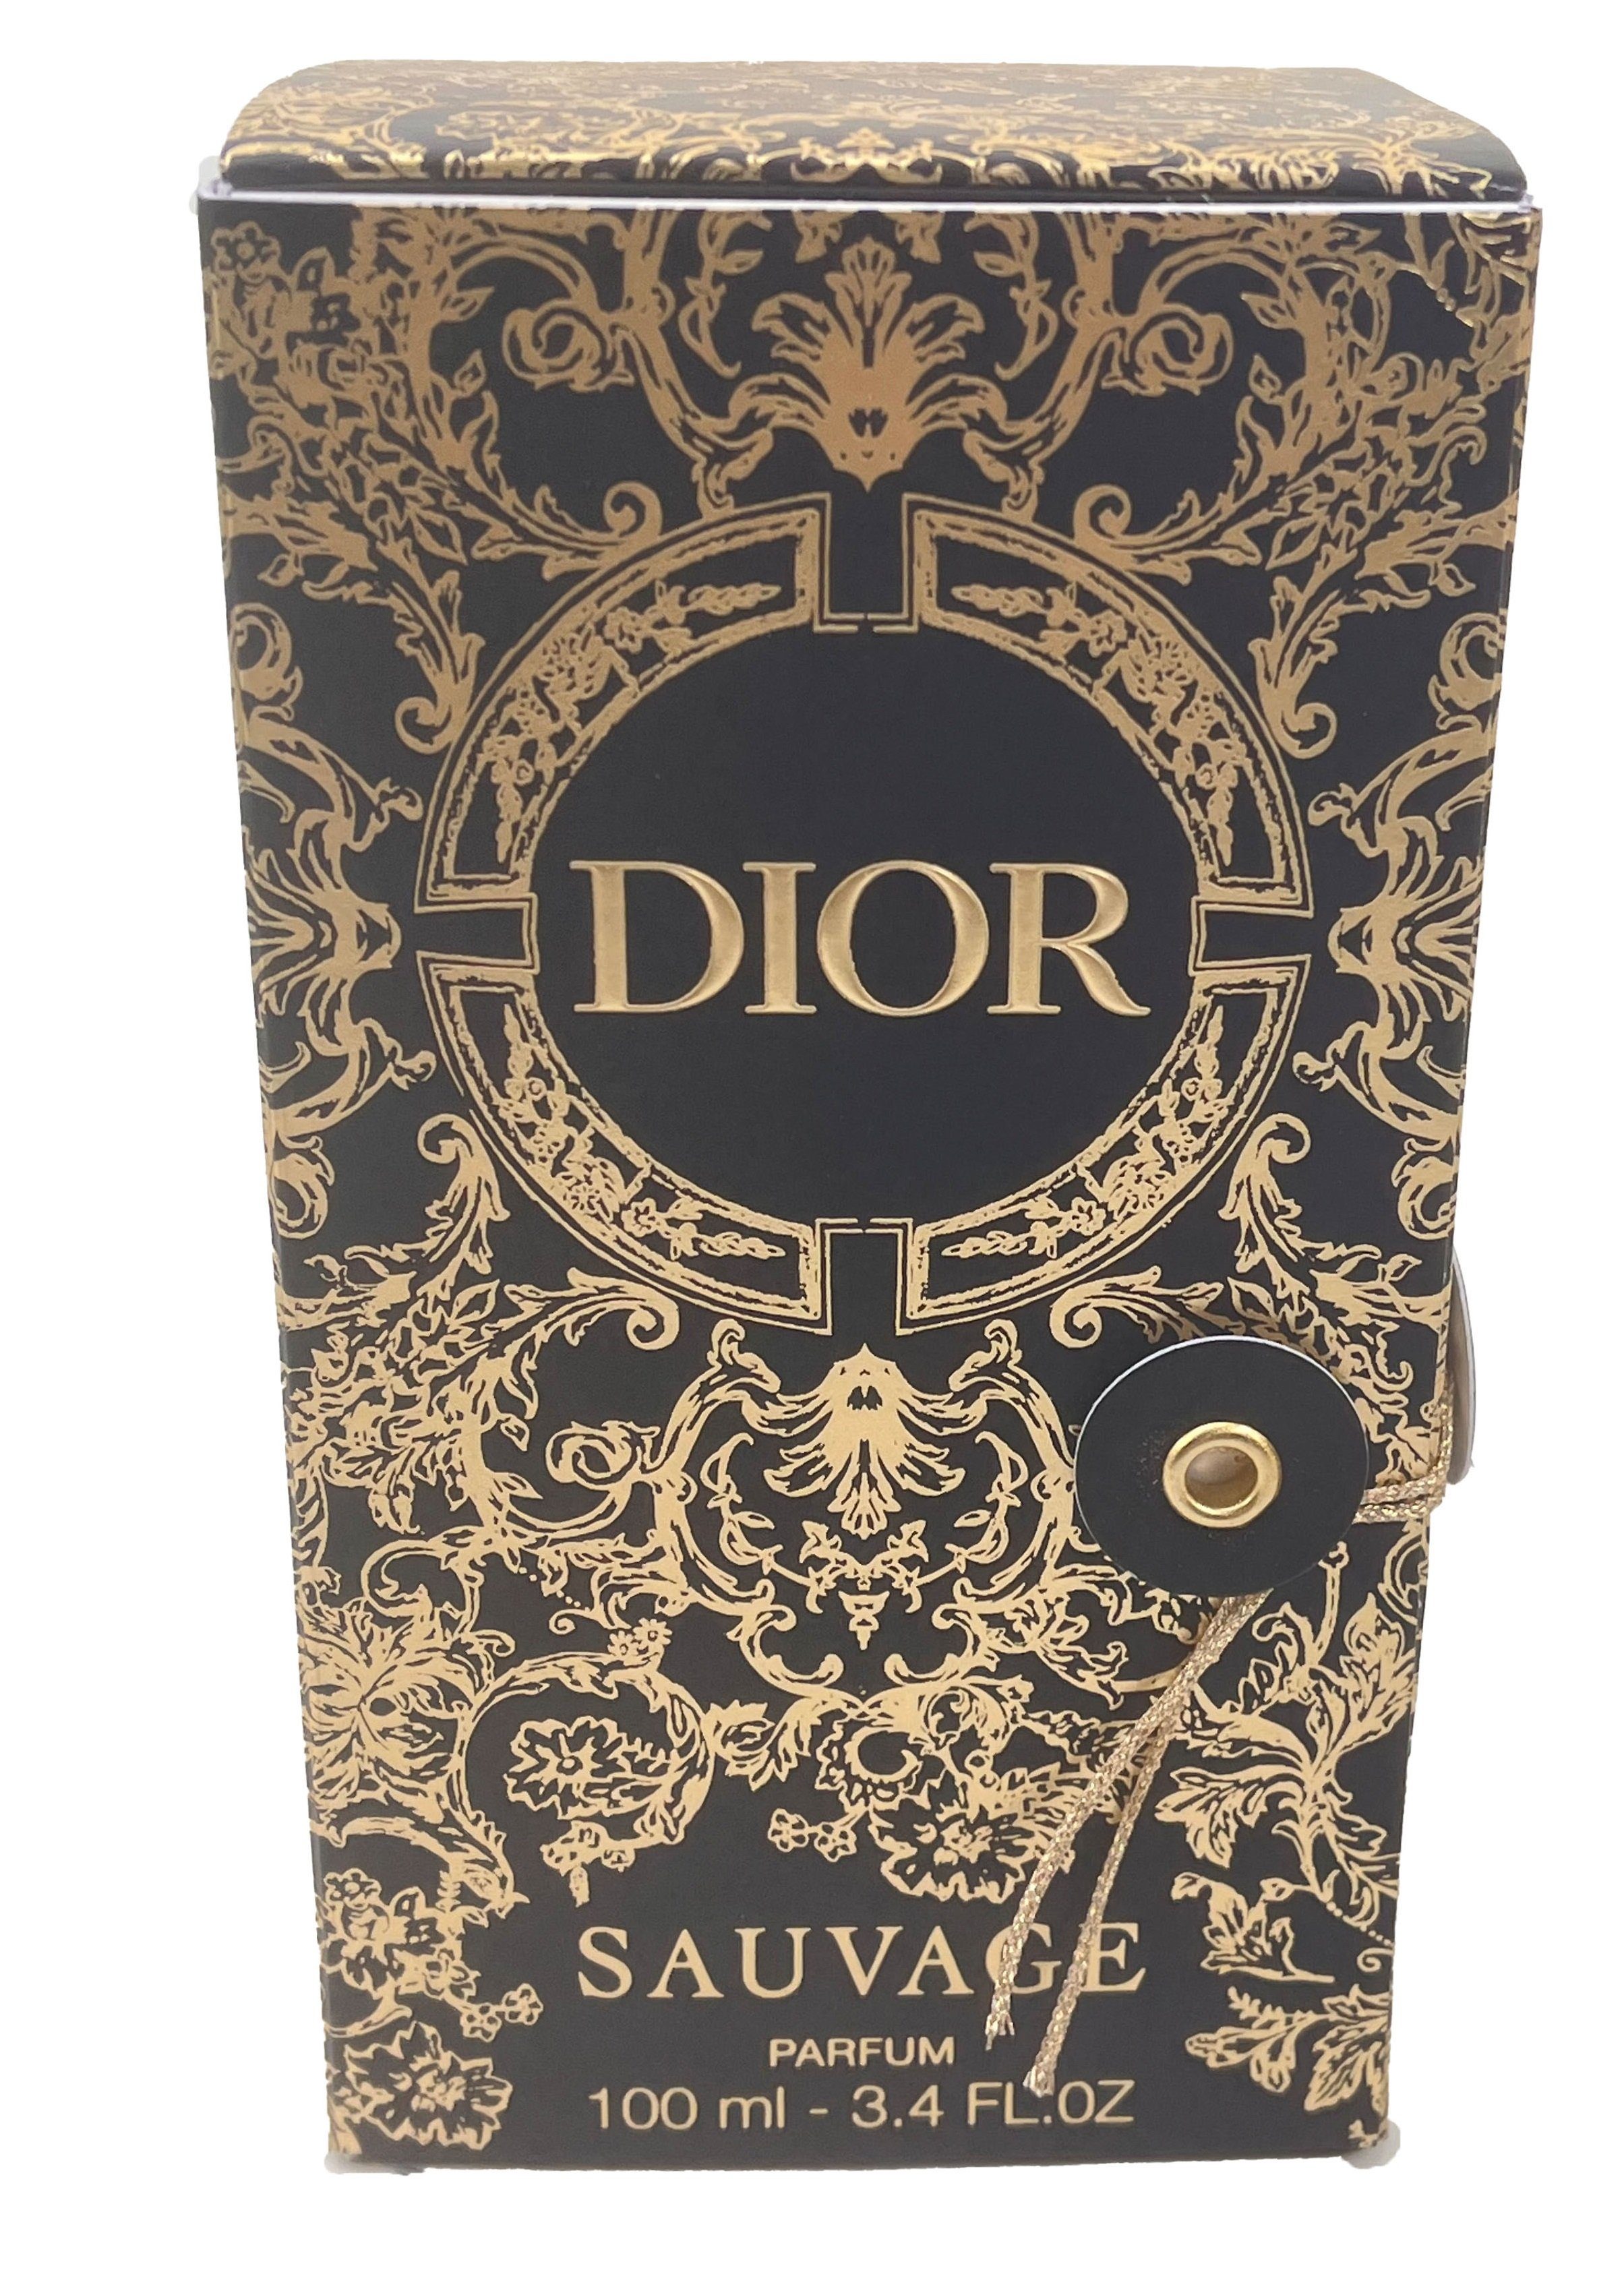 Dior Extrait Parfum Dior Sauvage Parfum Spray, limitierter Edition, ideal als Geschenk für Nikolaus,Weihnachten